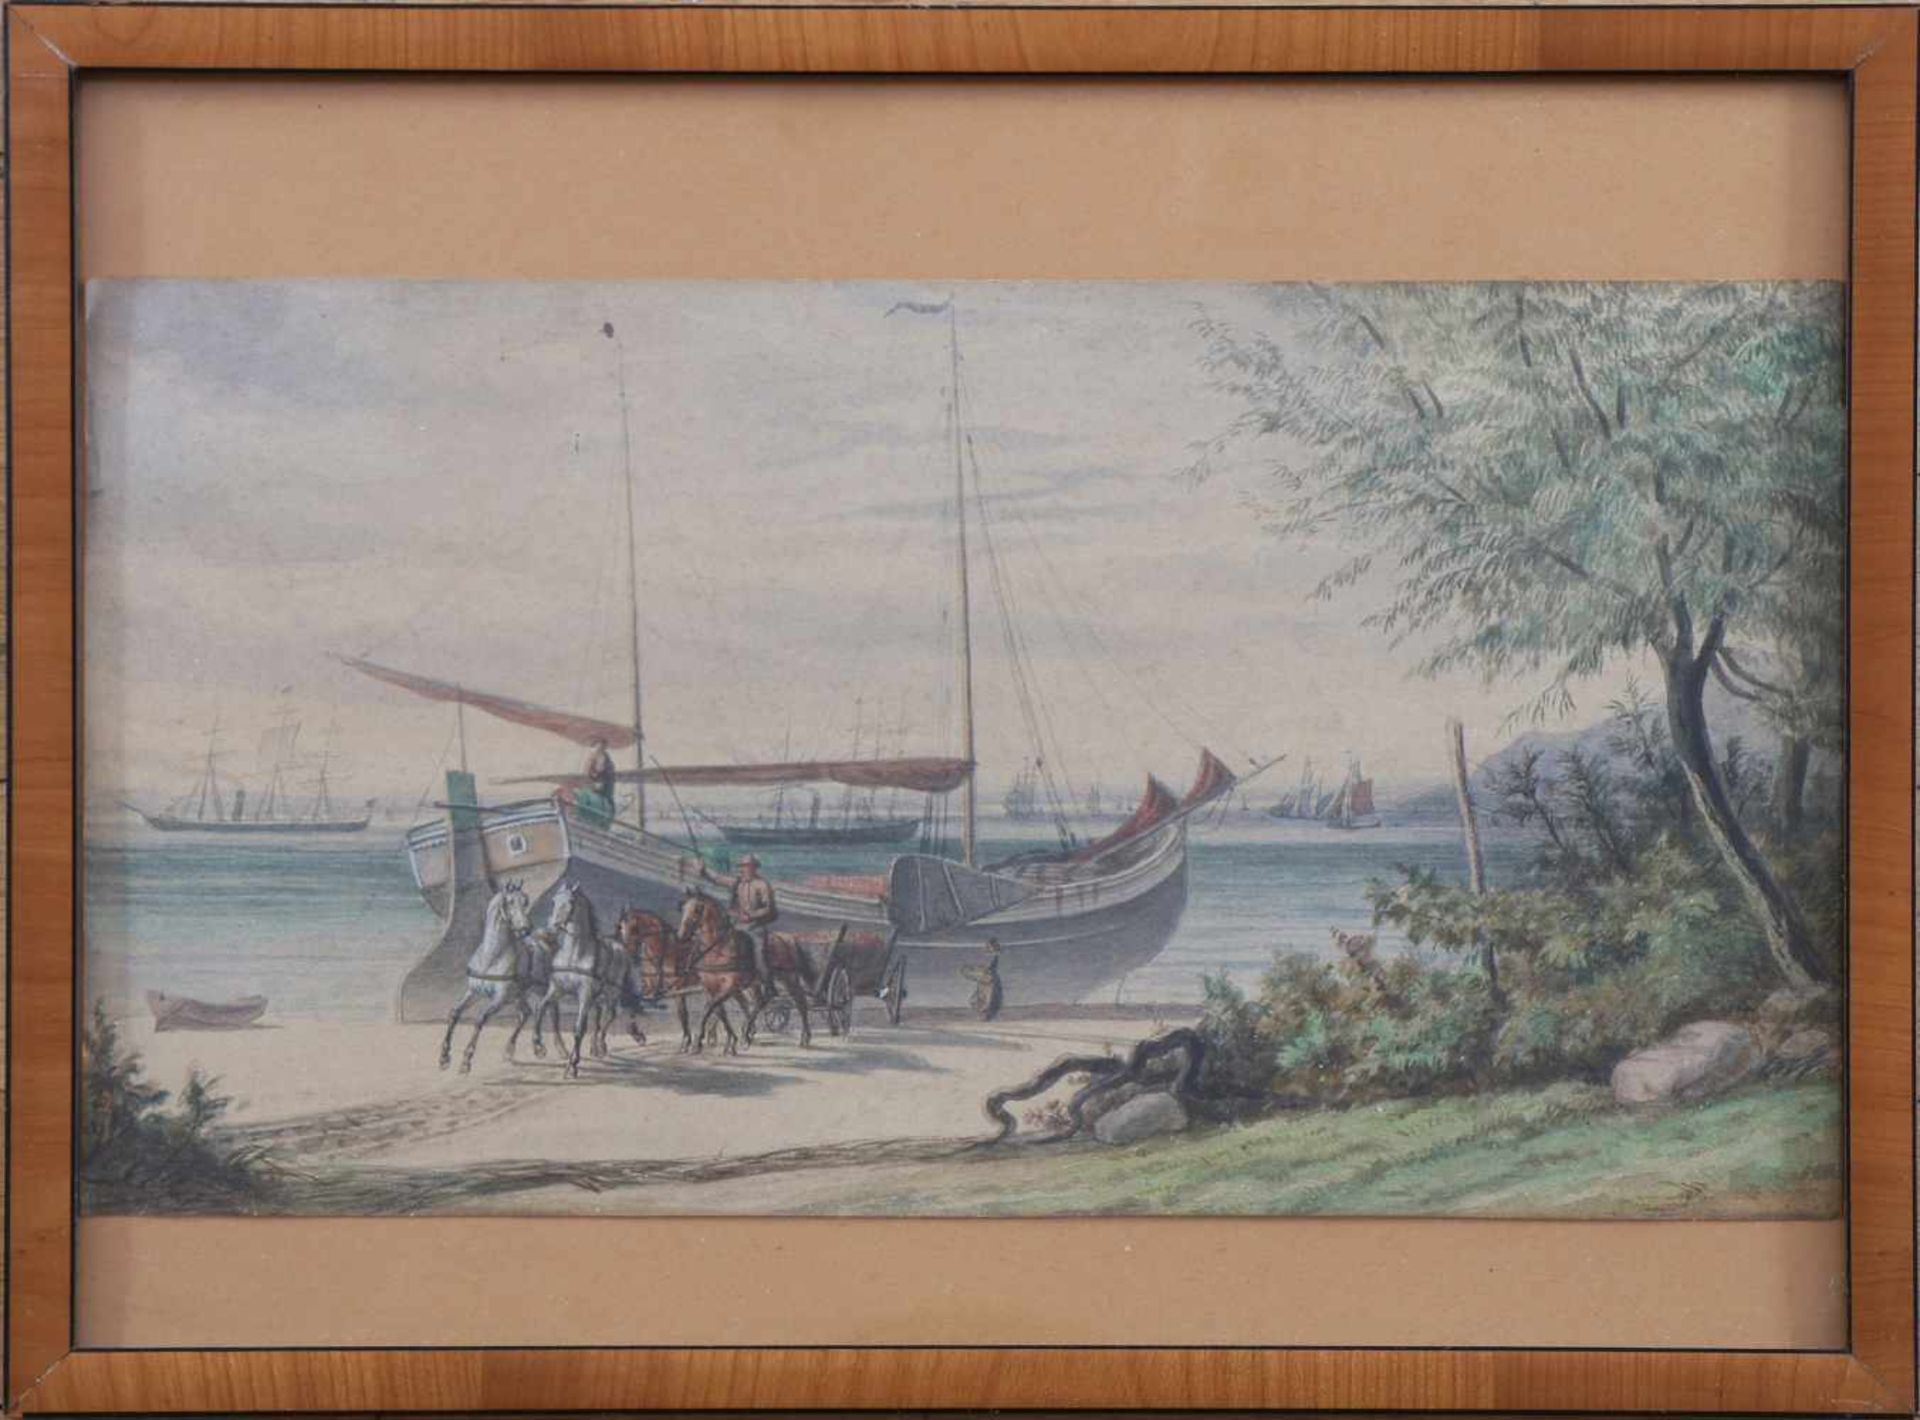 ANONYMAquarellzeichnung auf Papier, ¨Pferdefuhrwerk beim Entladen eines Küstenseglers vor Segler-